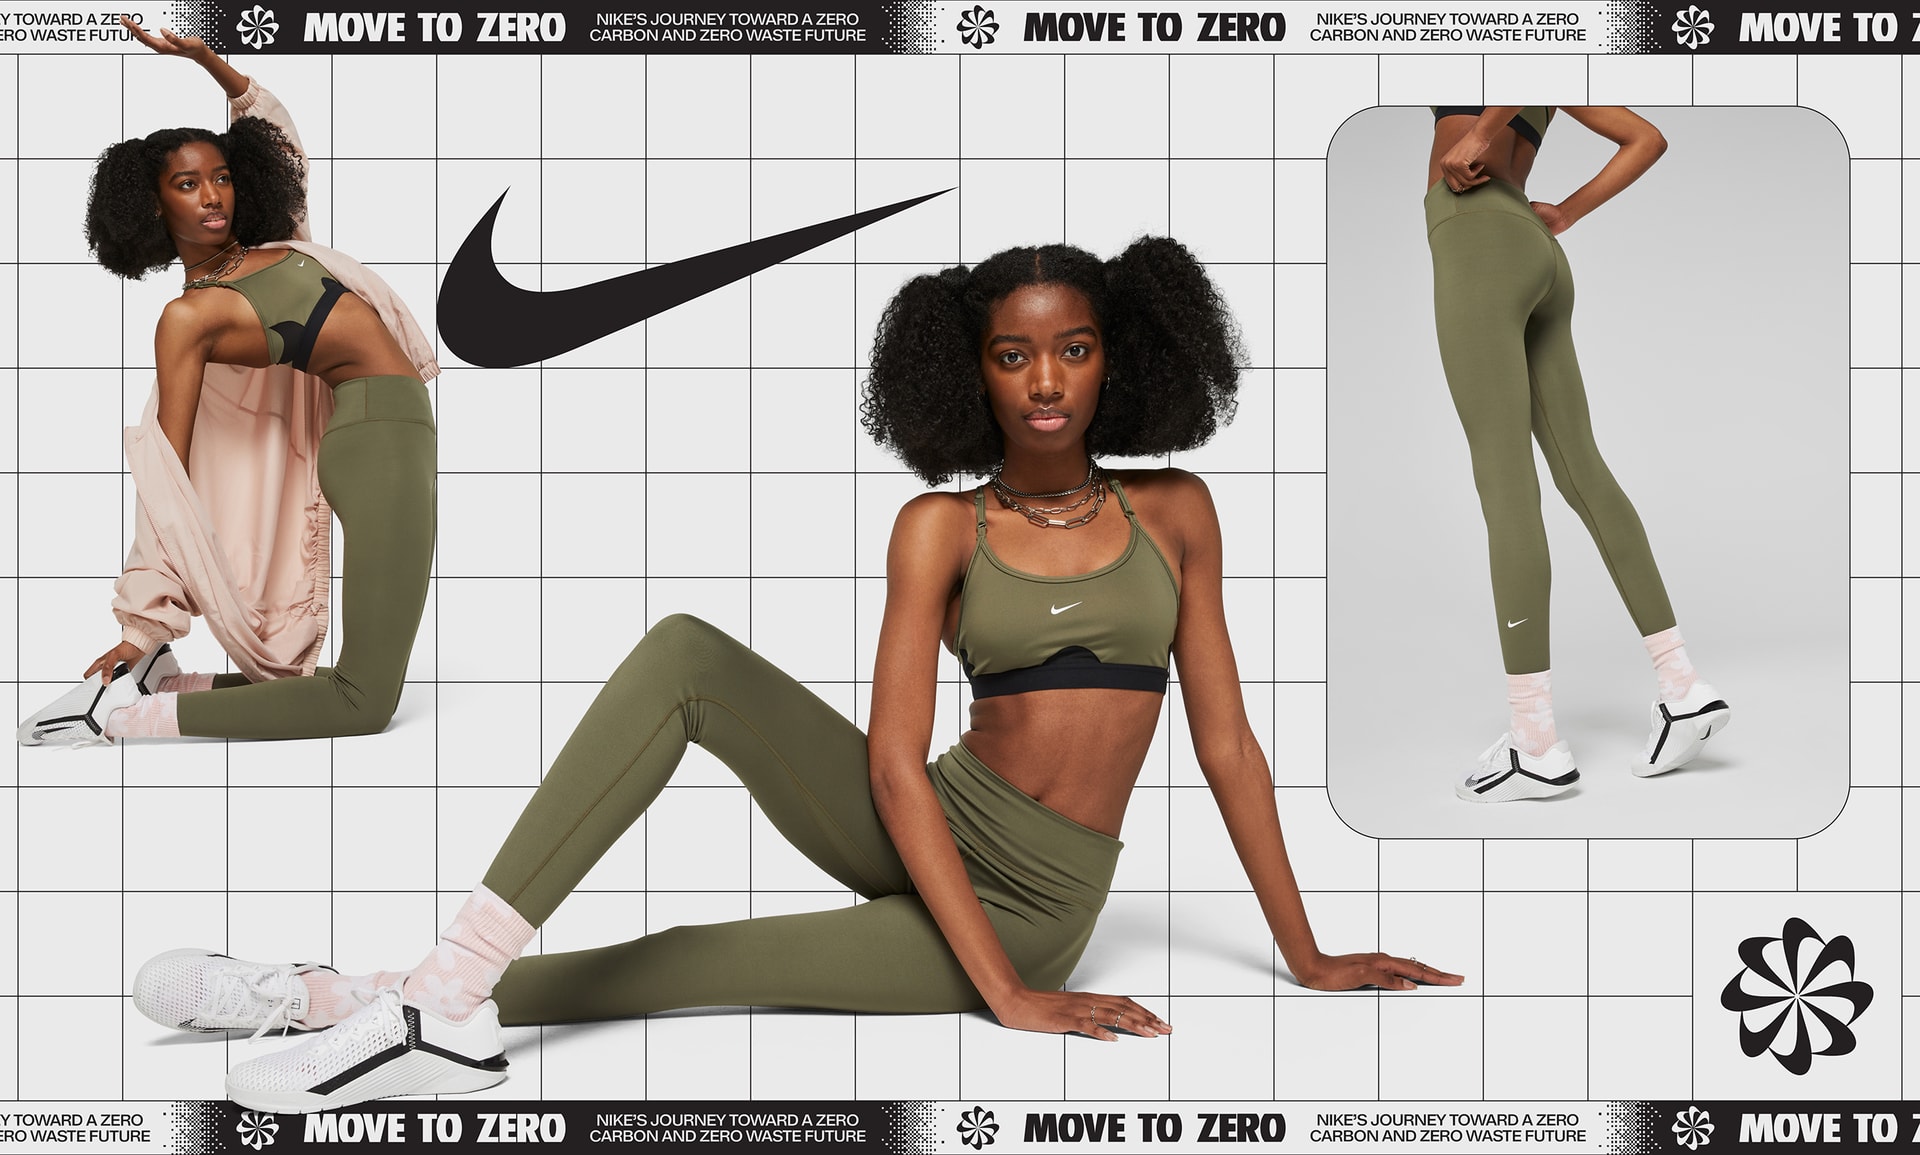 Nike One Women's Mid-Rise Leggings.